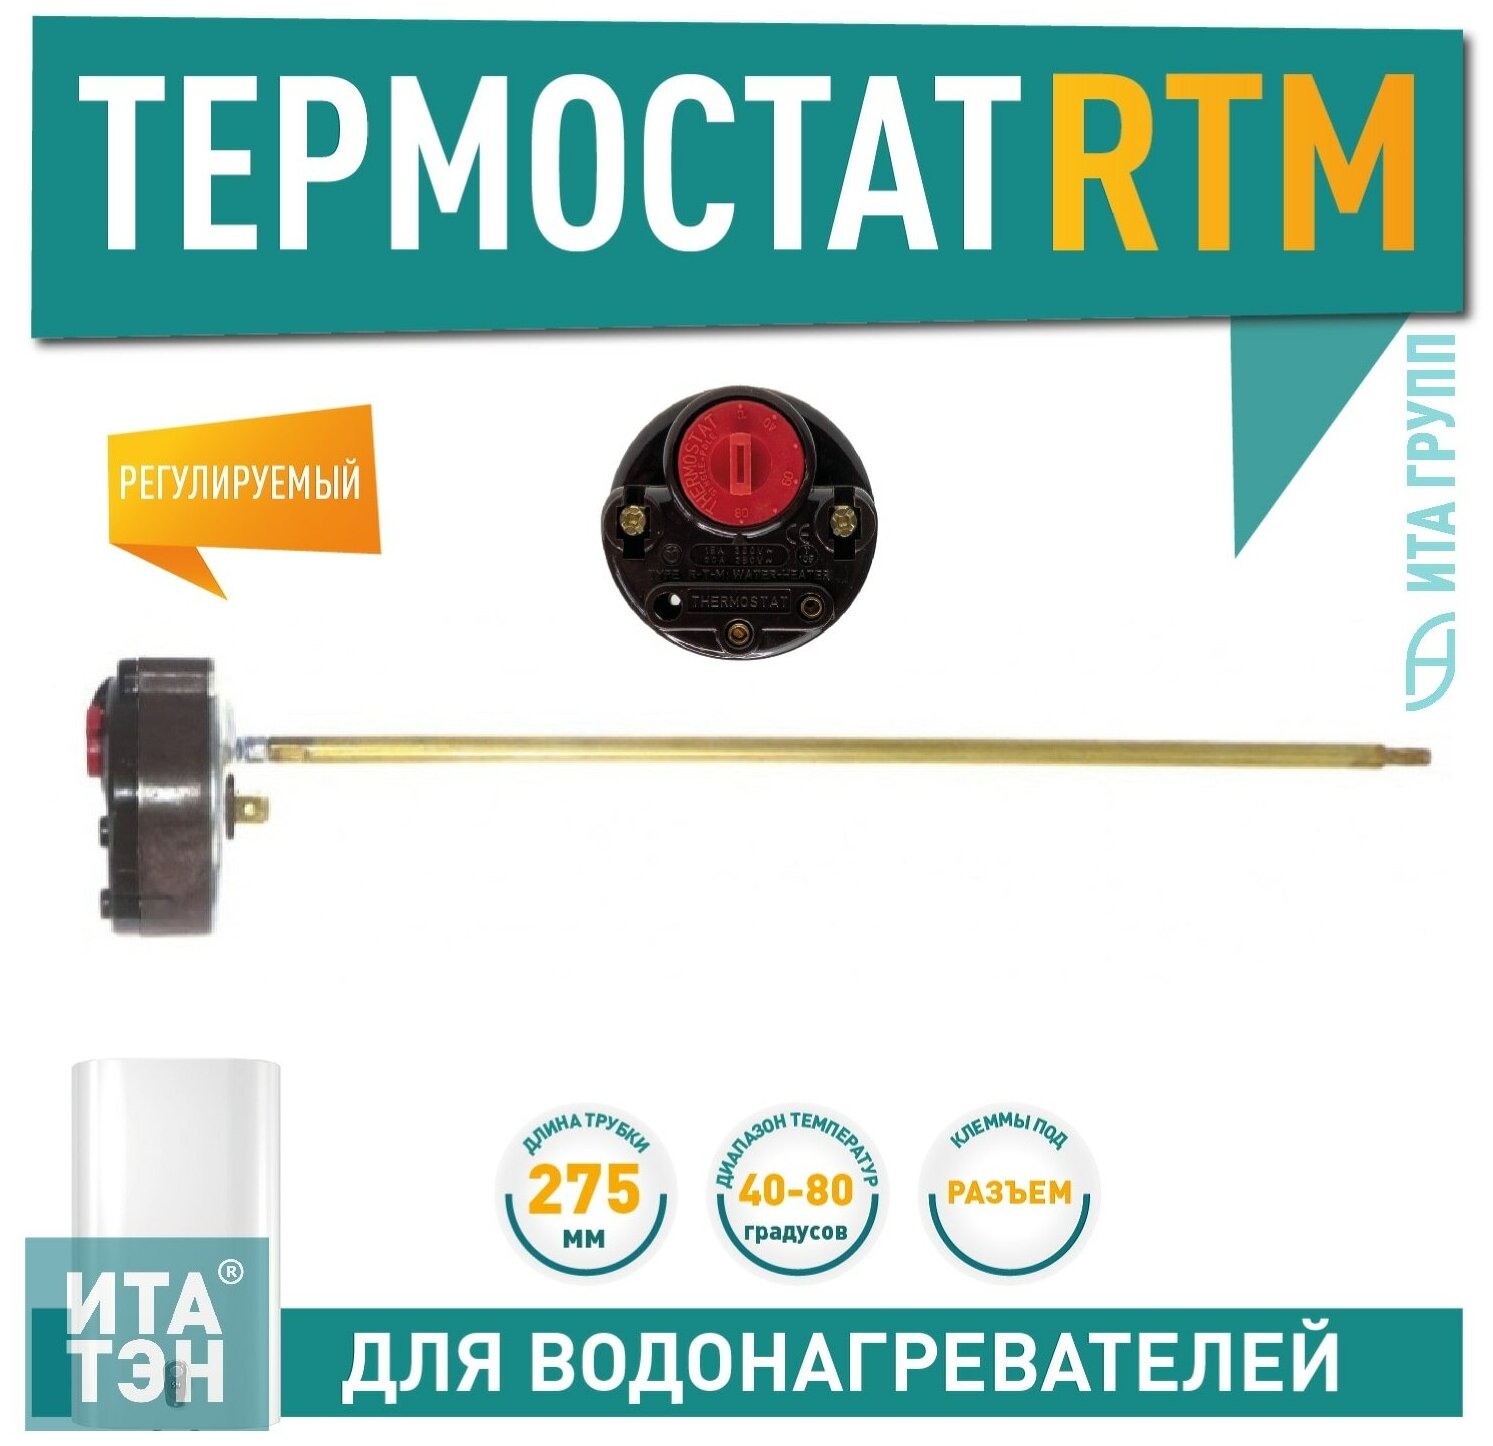 Термостат стержневой RTM 15A 40-80°С 275мм 250V Ariston 100820